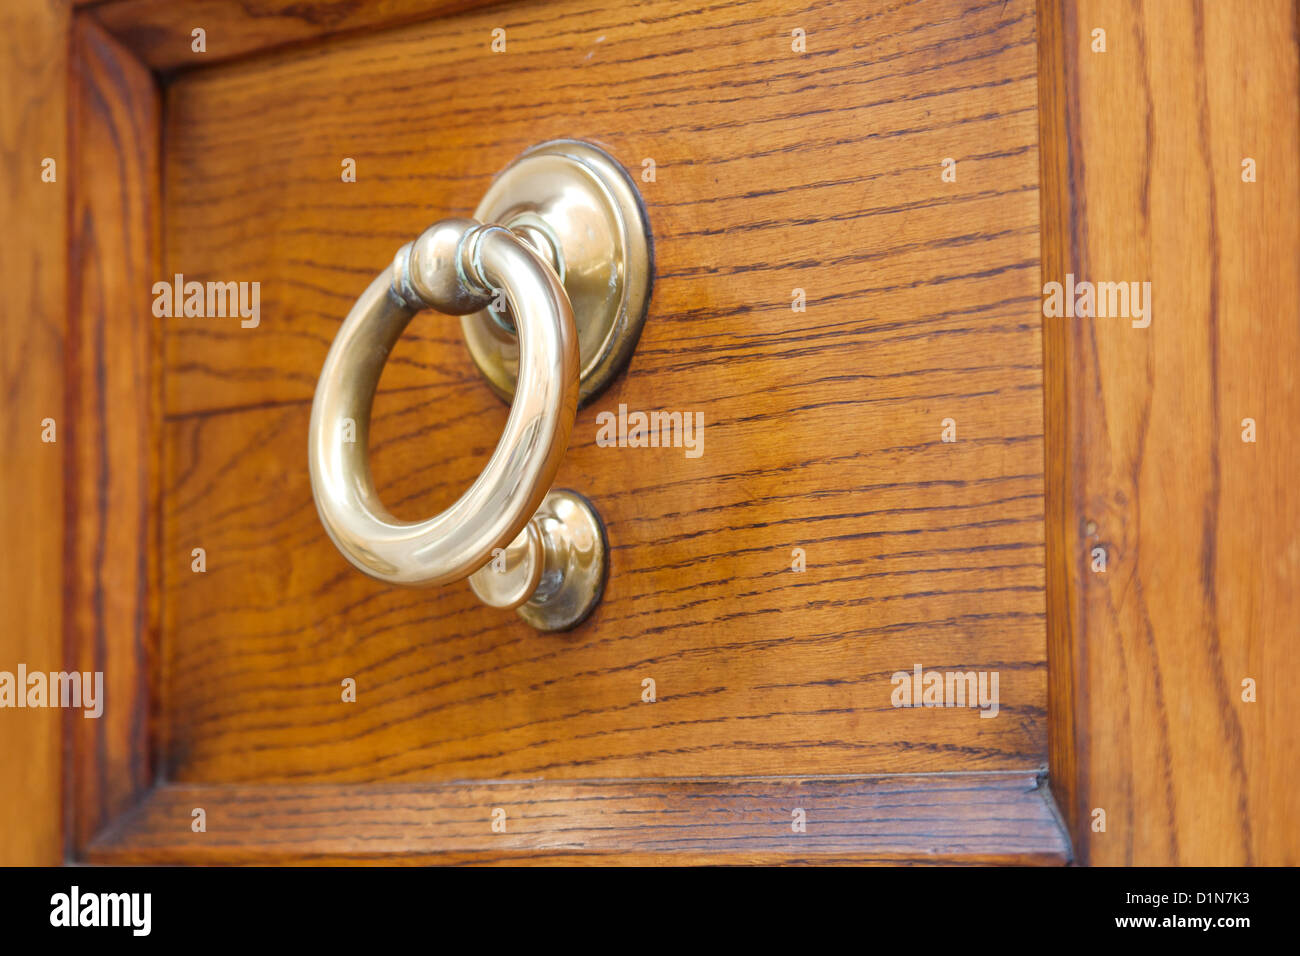 old brass ring door handle on wooden urban door Stock Photo